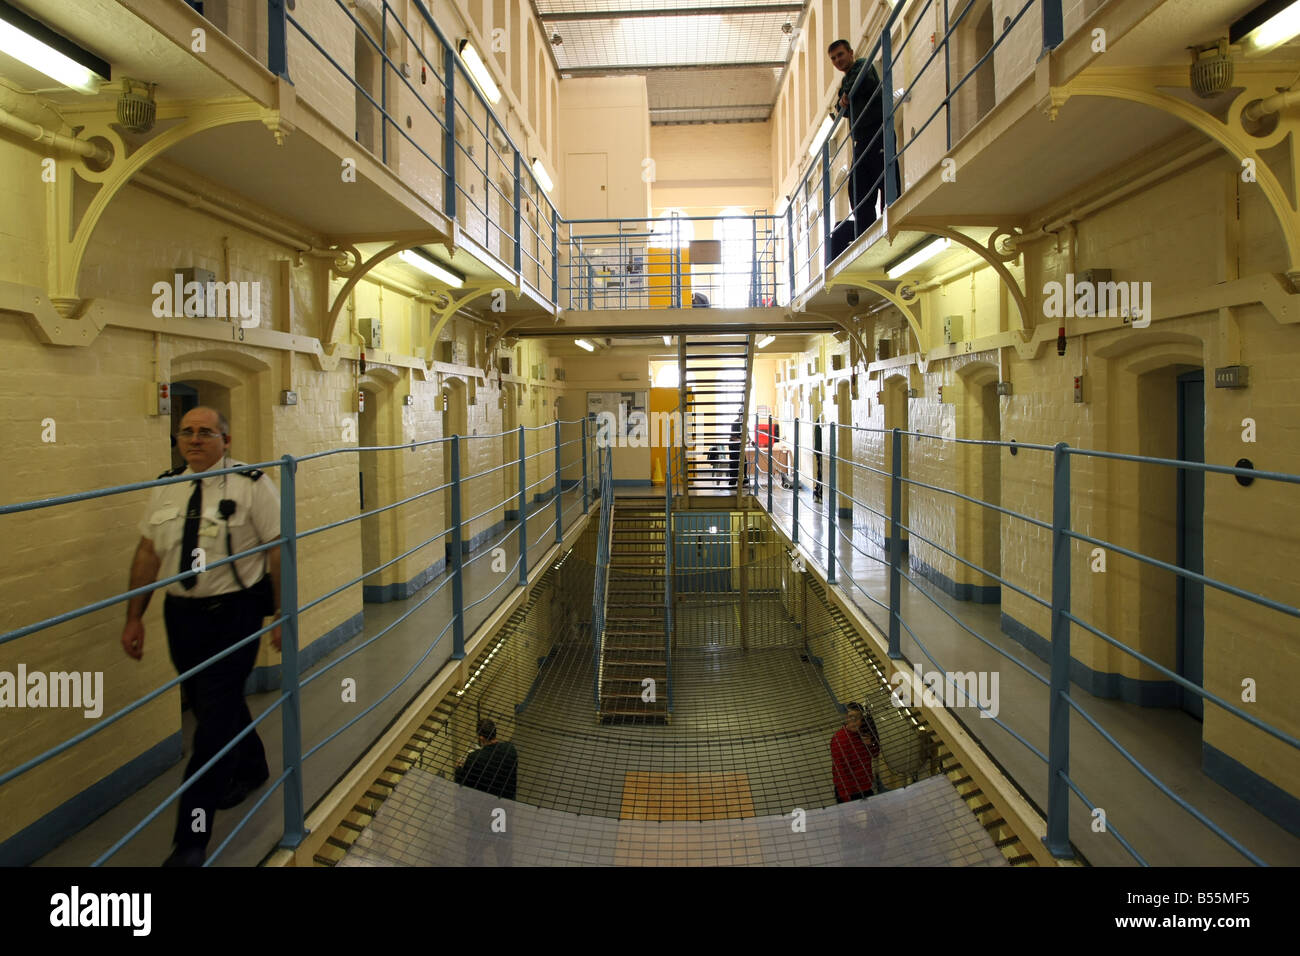 Officier de la prison de marcher sur l'atterrissage dans 'UN' Hall dans Craiginches dans la prison de la ville d'Aberdeen, Écosse, Royaume-Uni Banque D'Images